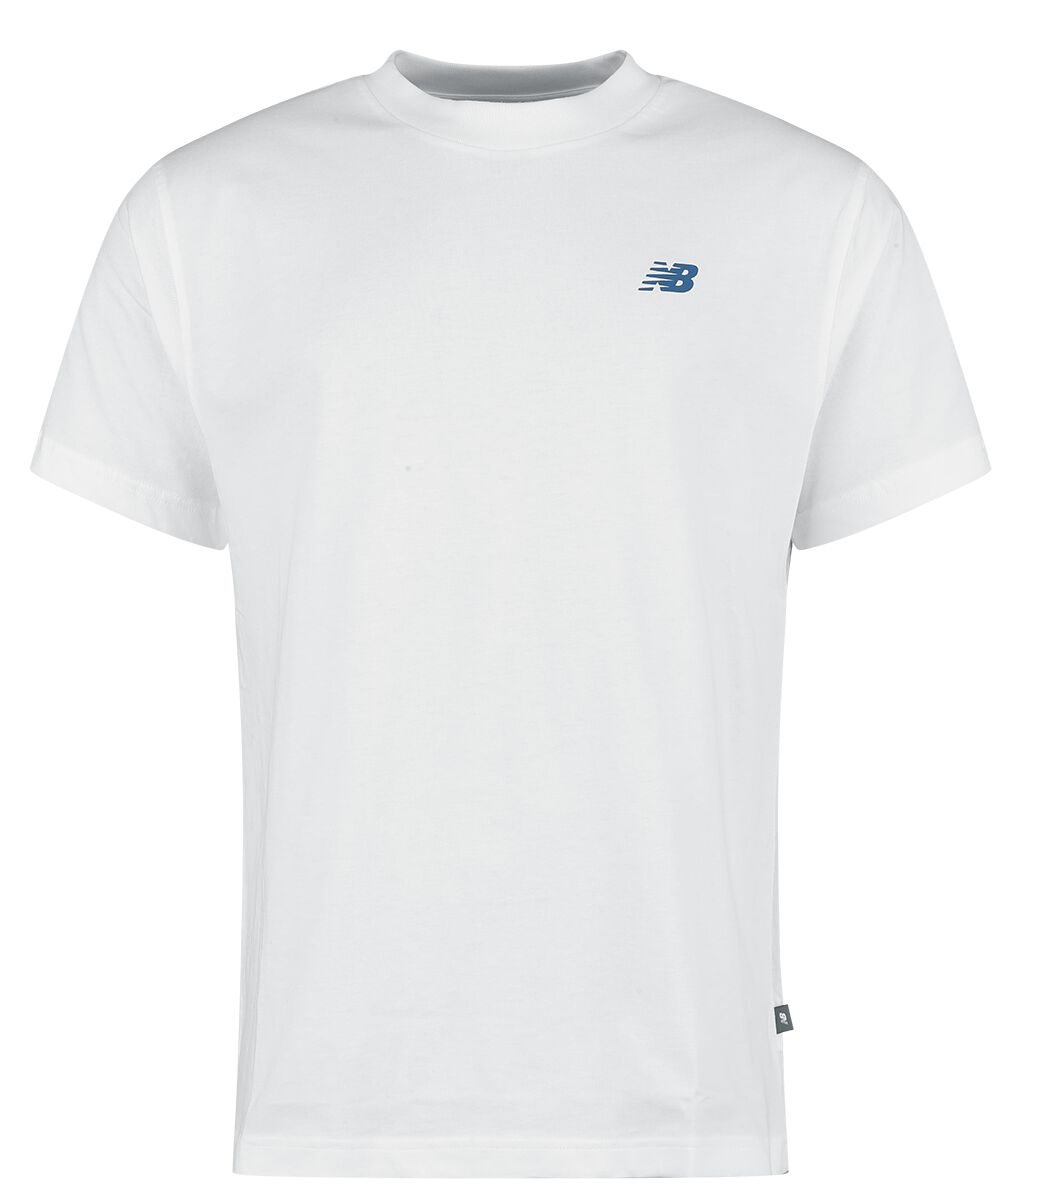 New Balance T-Shirt - Runners Tee - S bis XXL - für Männer - Größe S - weiß